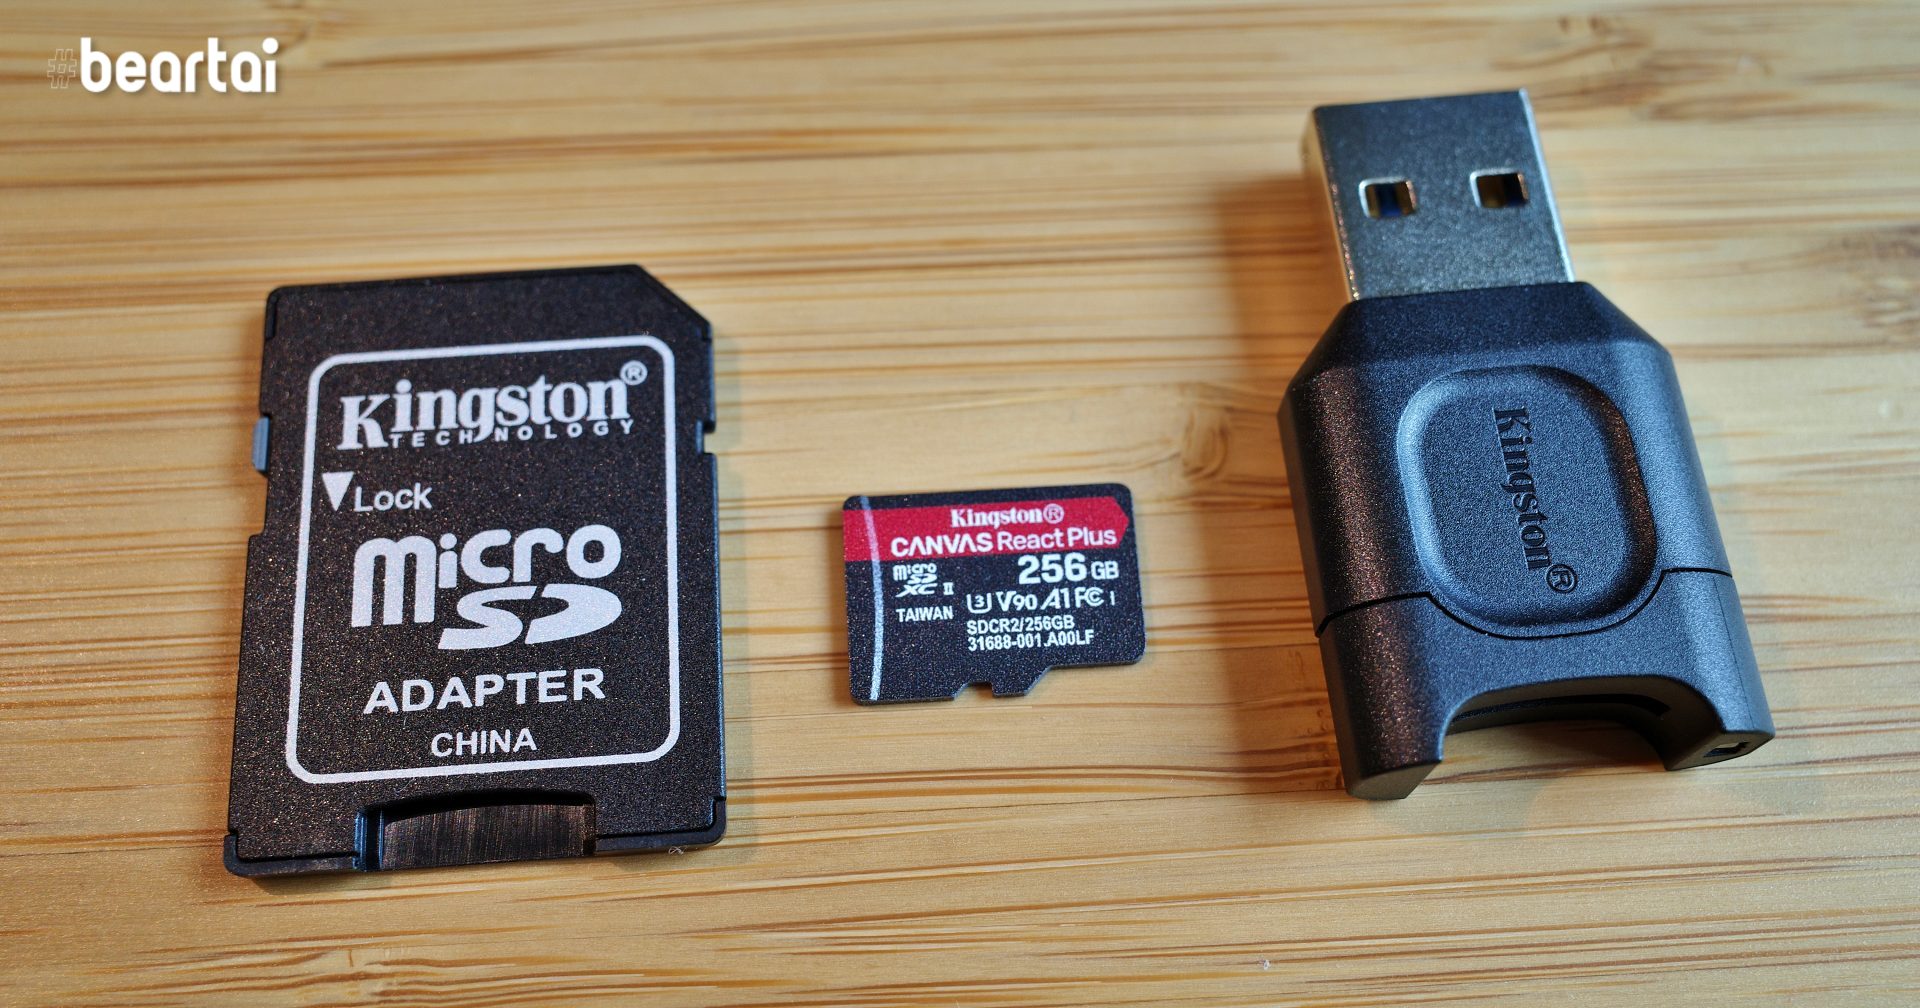 รีวิวการ์ด MicroSD สุดแรง! Kingston Canvas React Plus พร้อมตัวอ่านการ์ด UHS-II